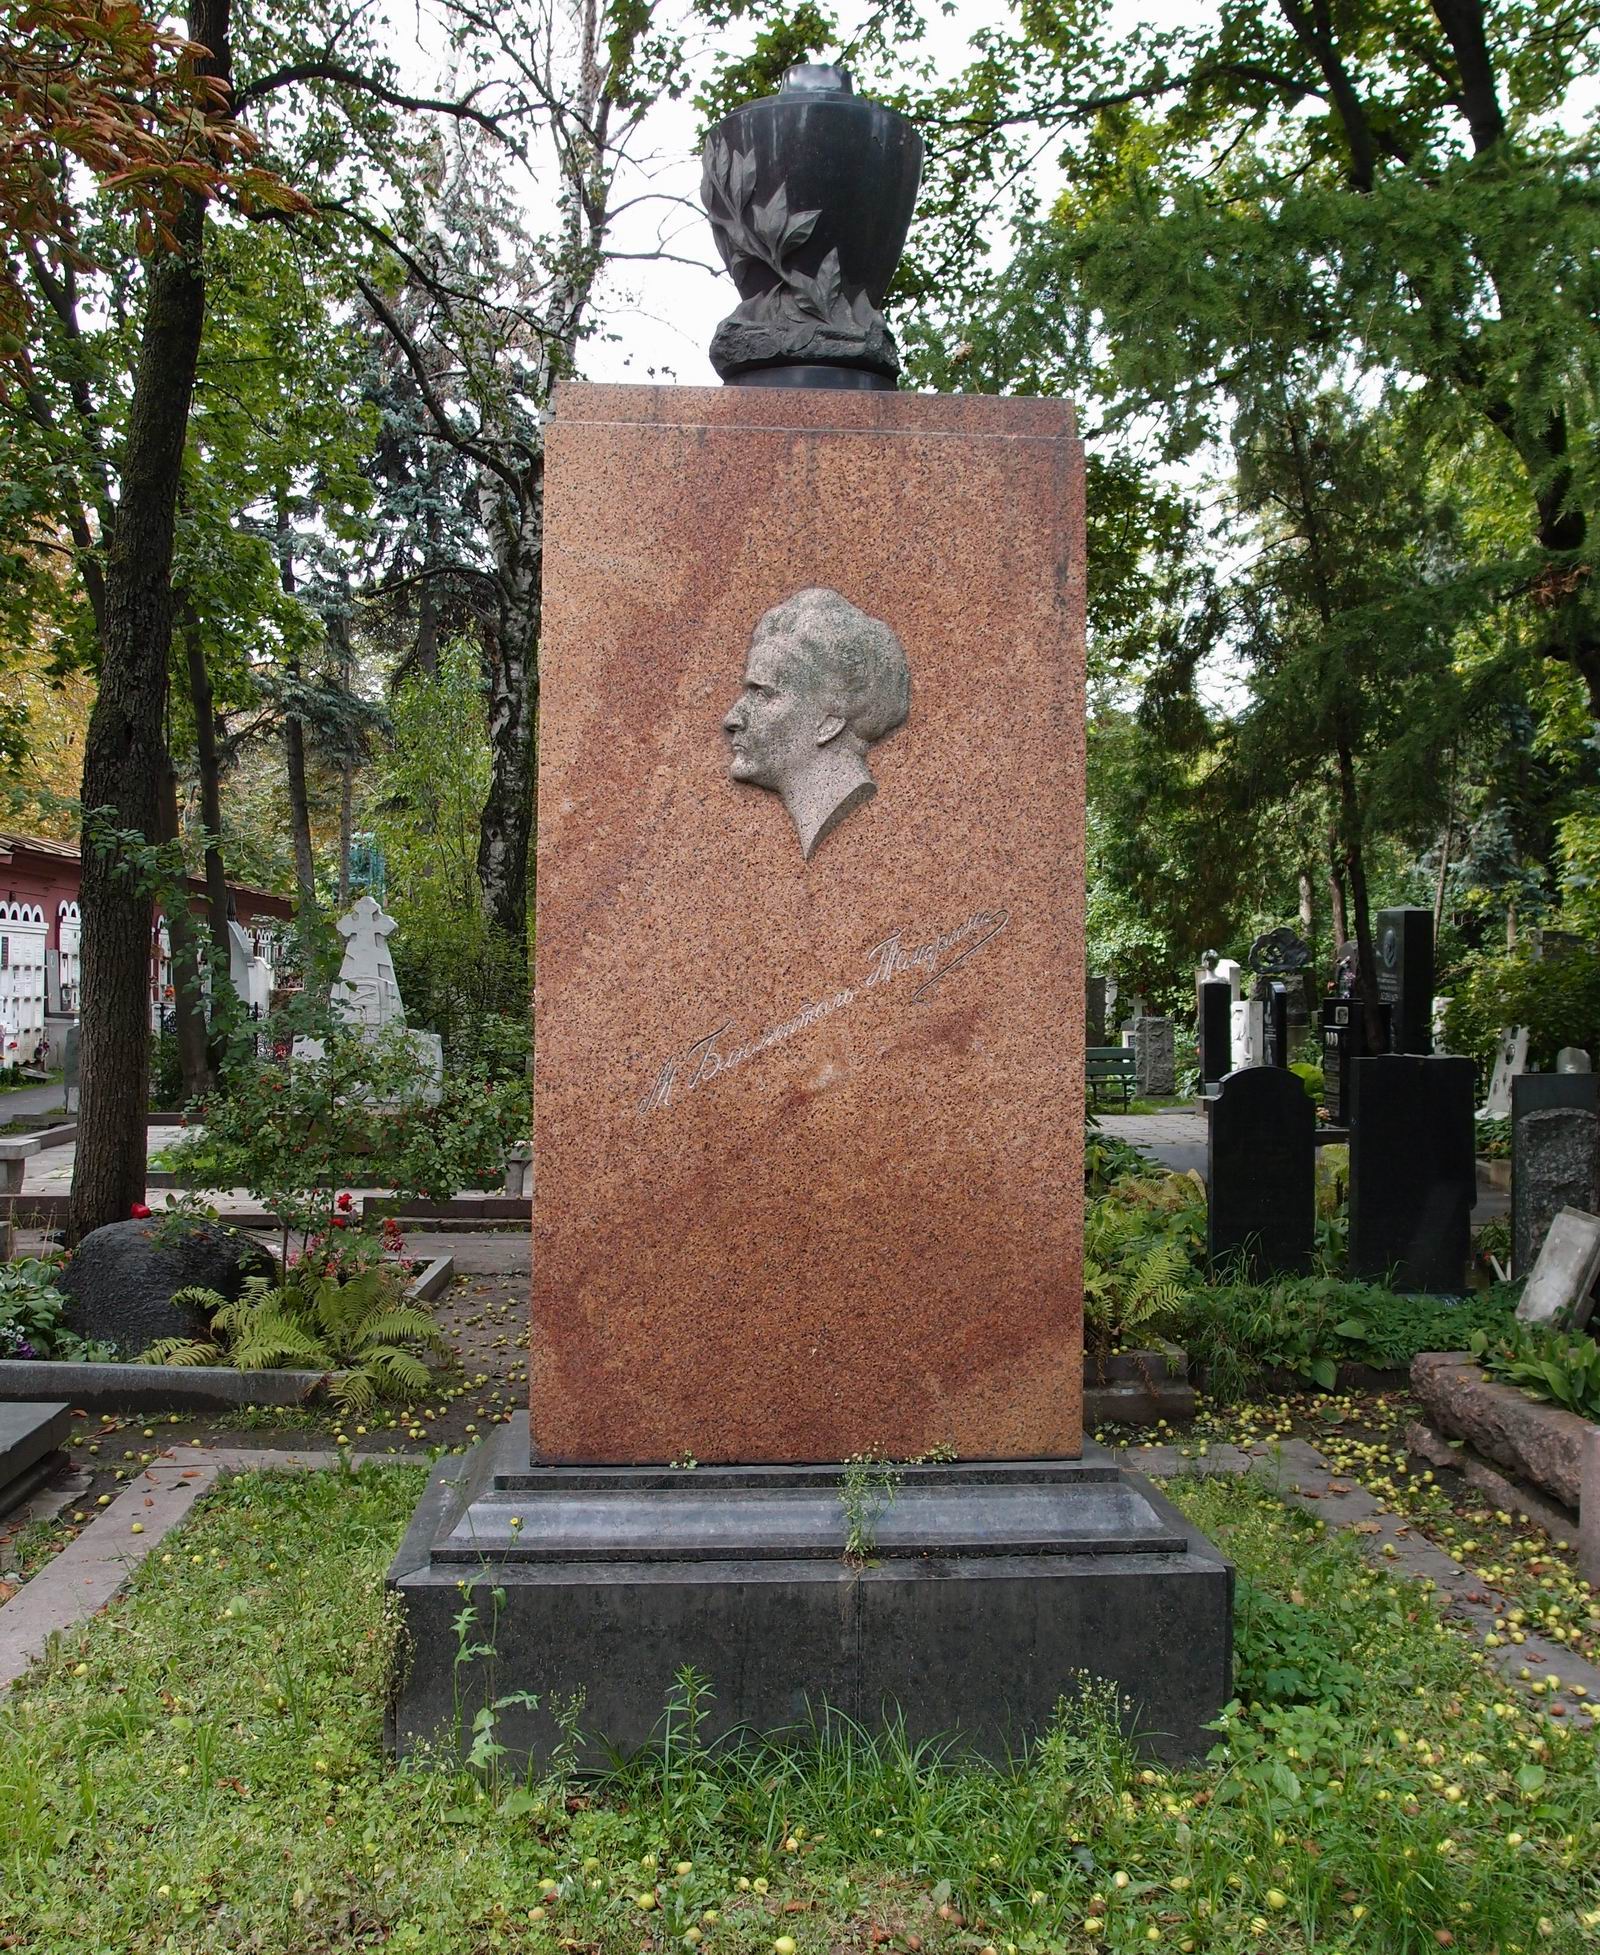 Памятник на могиле Блюменталь-Тамариной М.М. (1859-1938), ск. С.Меркуров, на Новодевичьем кладбище (2-22-9). Нажмите левую кнопку мыши, чтобы увидеть фрагмент памятника крупно.